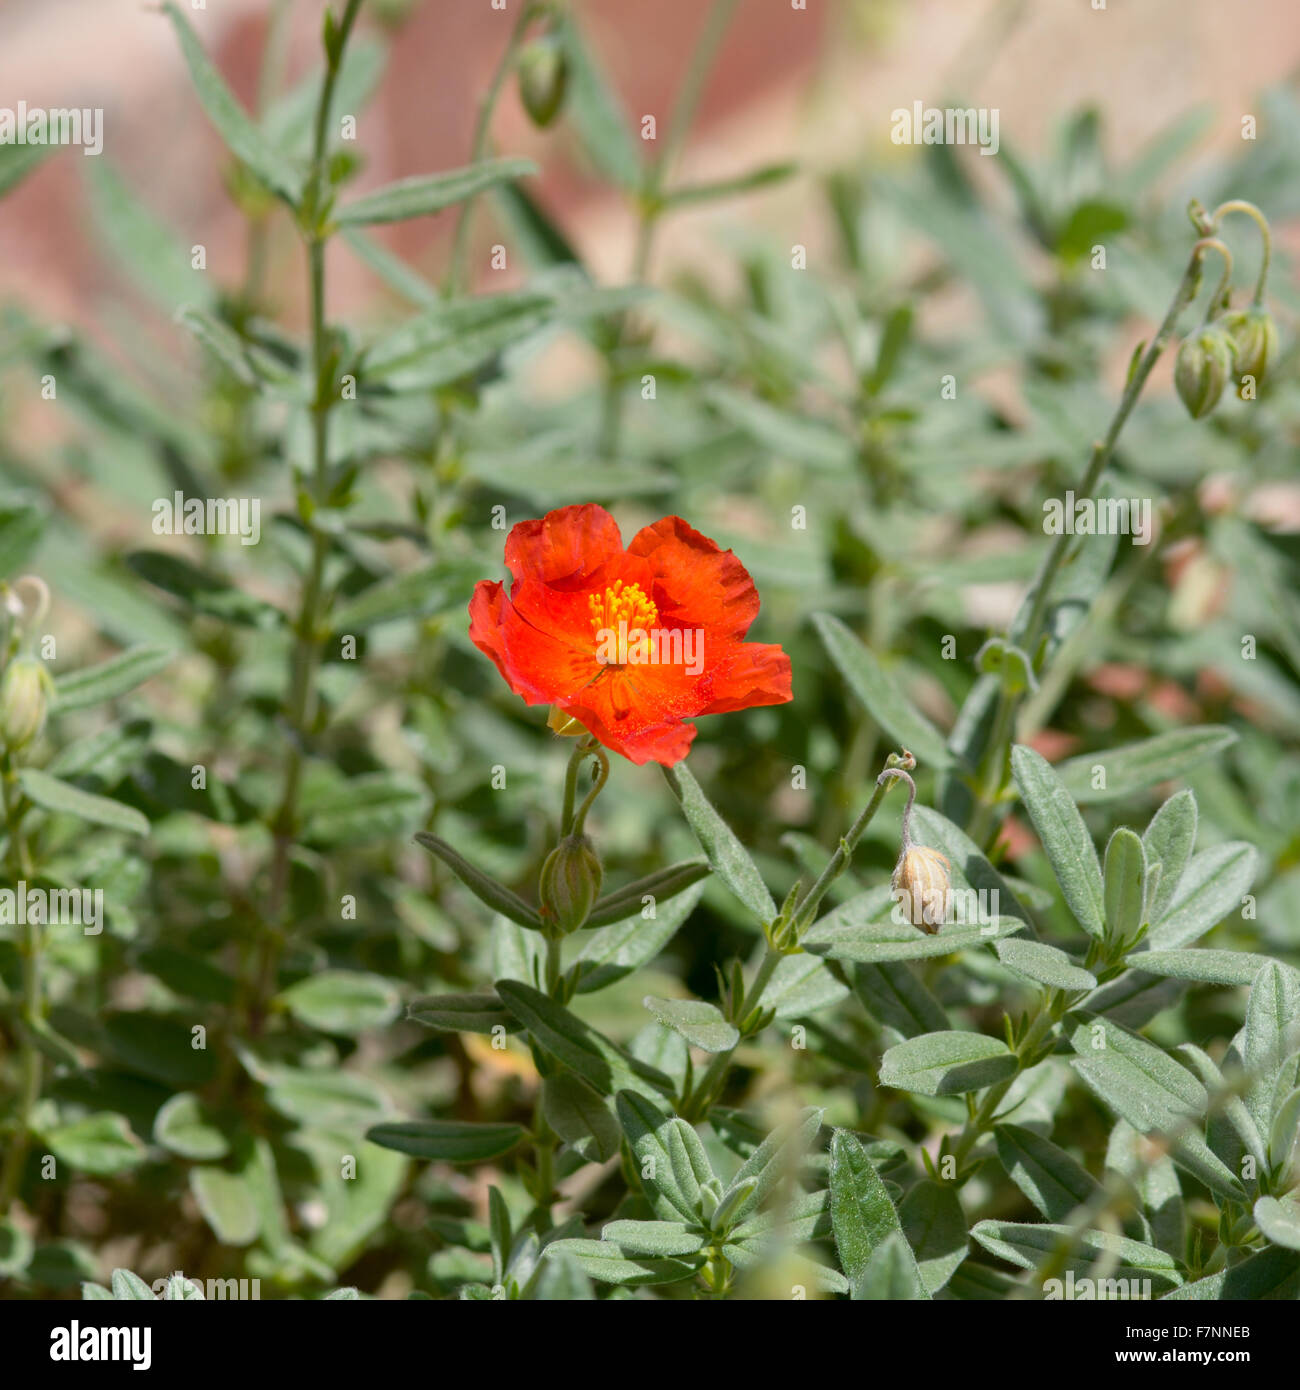 Helianthemum henfield flower in garden Stock Photo